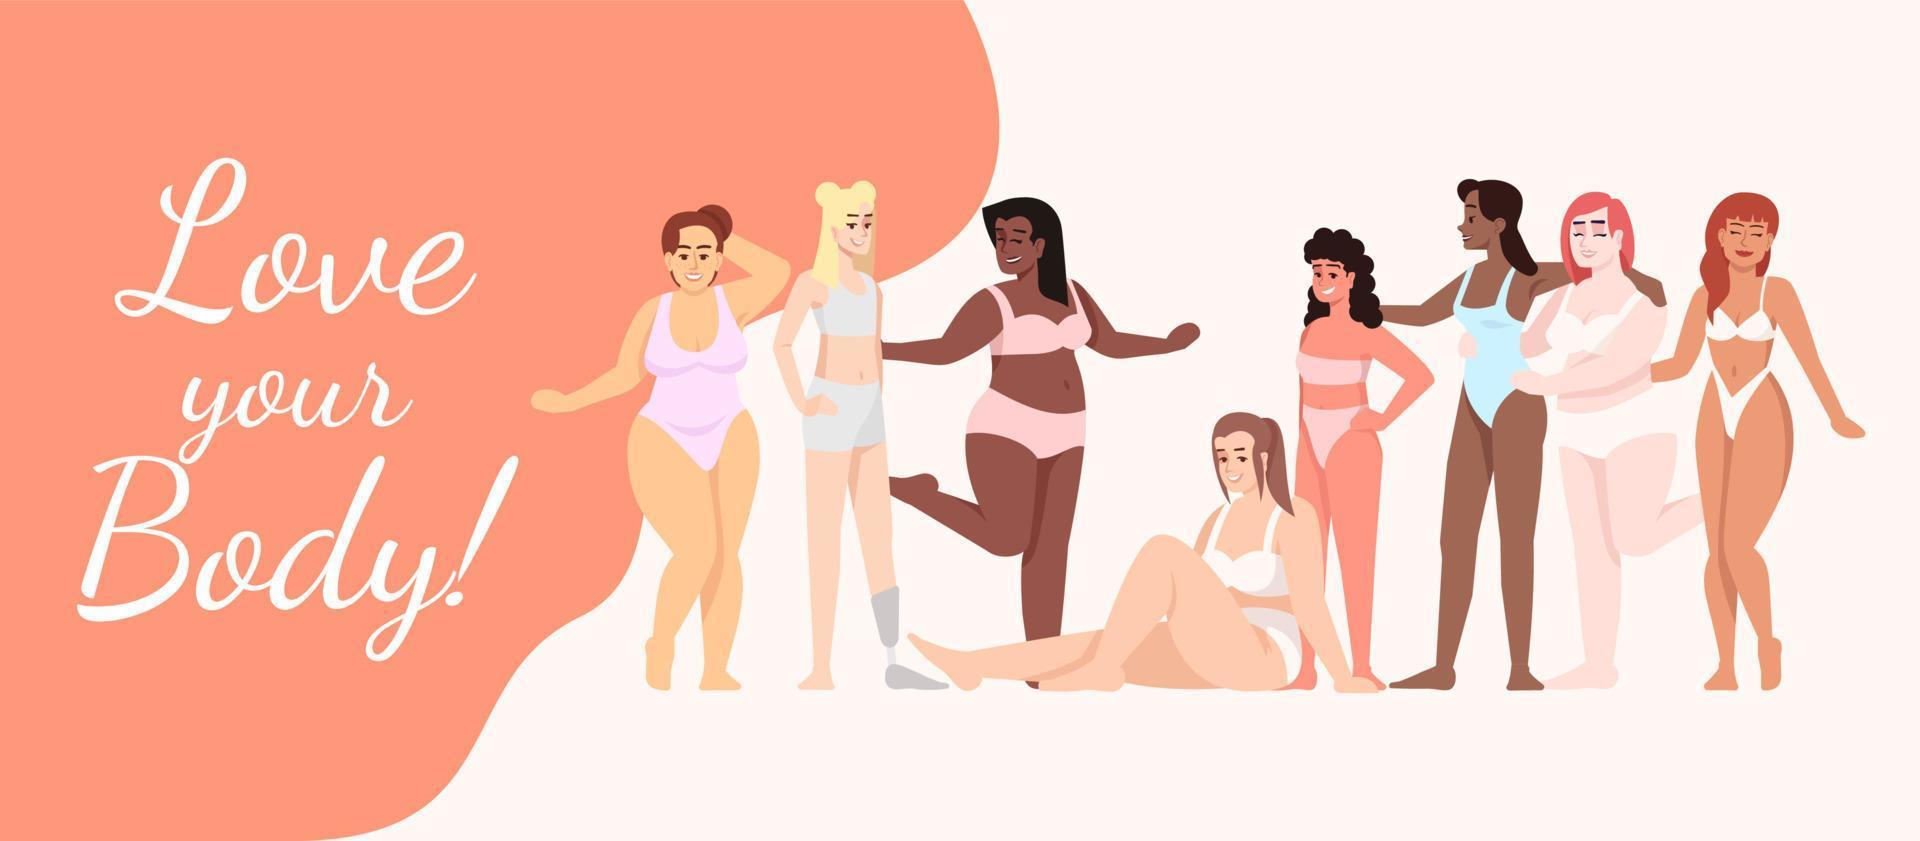 älskar din kropp platt affisch vektor mall. kvinnor klädda i baddräkter seriefigurer på vitt och orange. leende damer. banner, broschyrsida, broschyrdesignlayout med plats för text